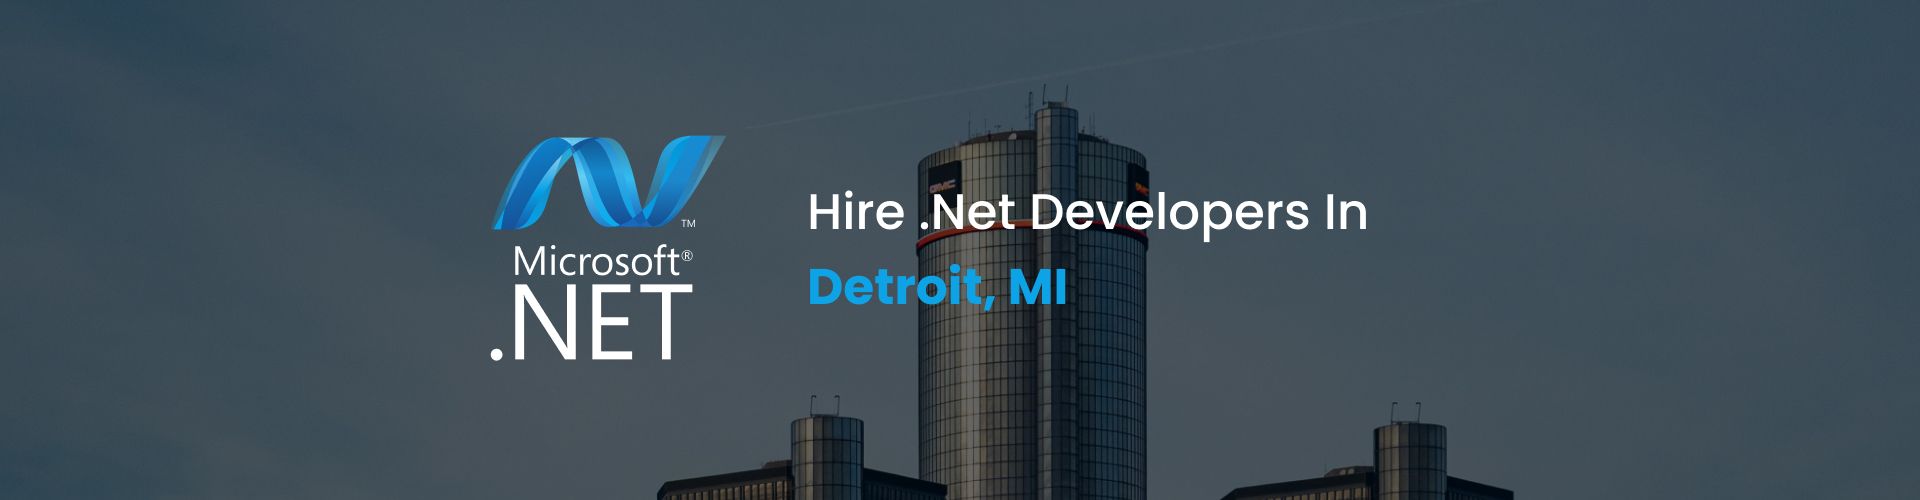 hire .net developers in detroid, mi